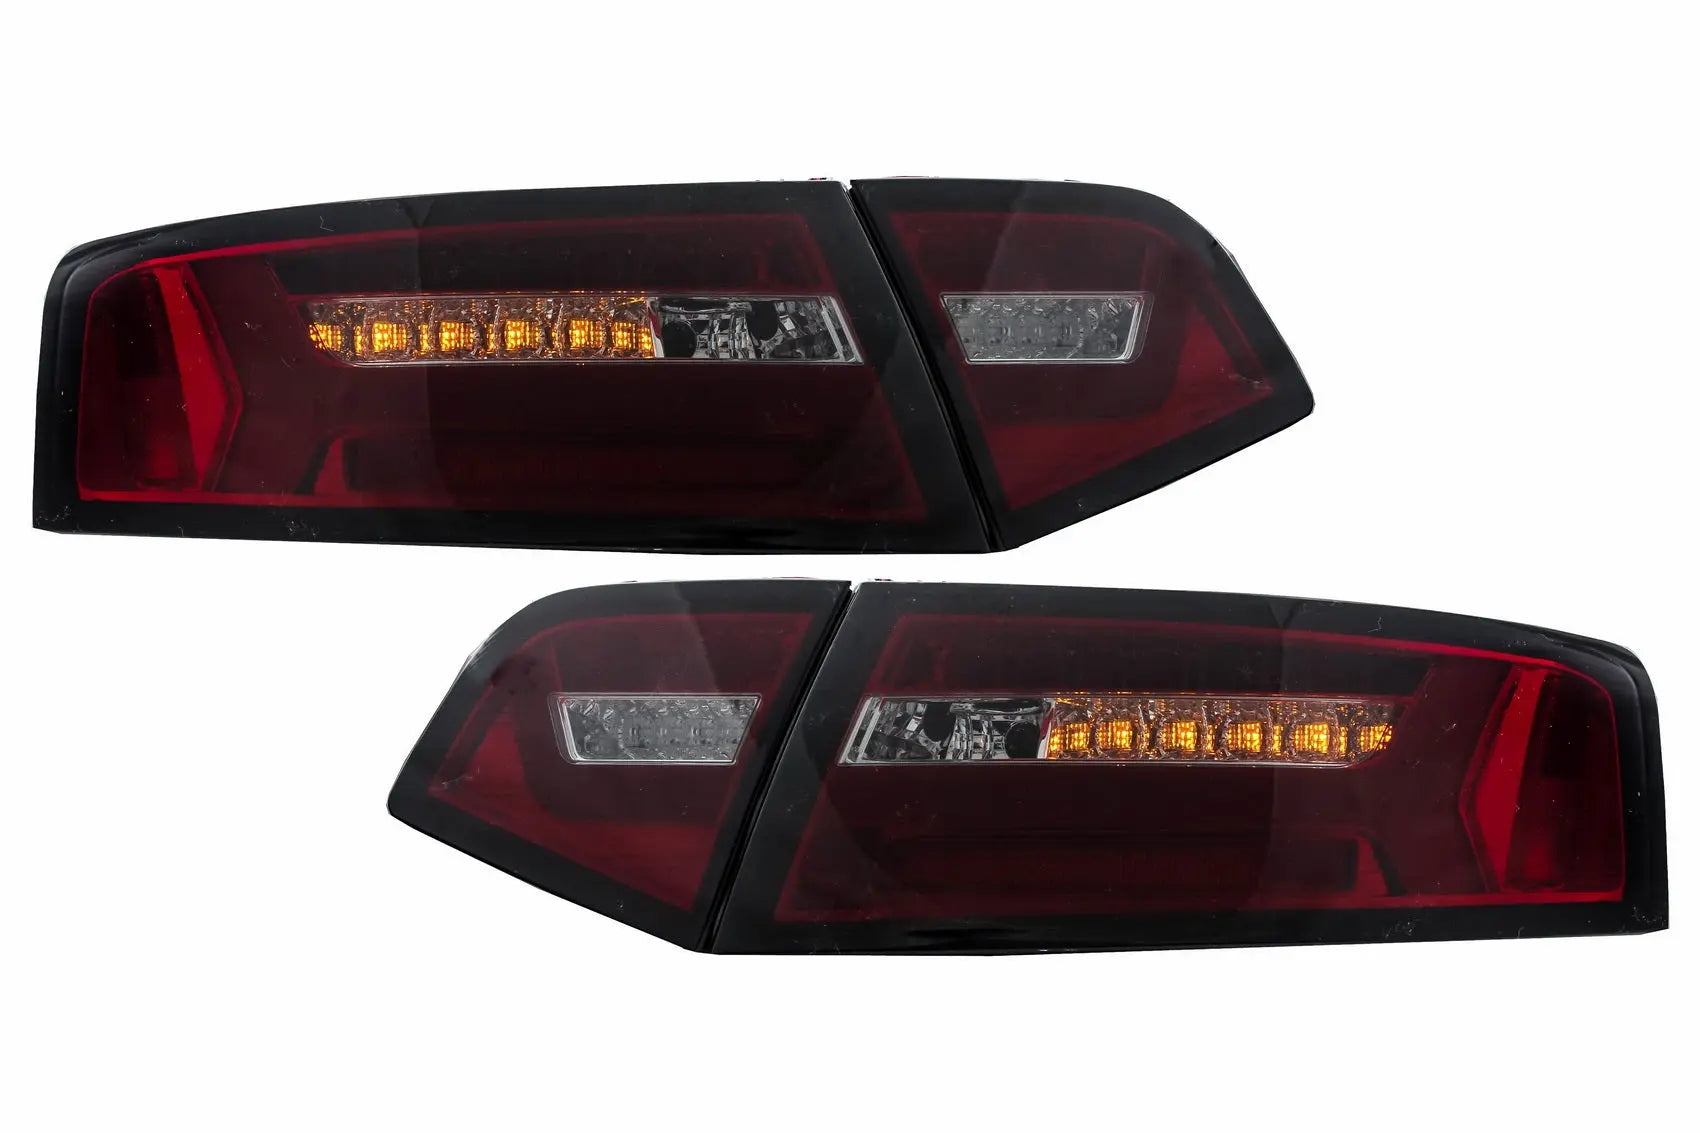 Rückleuchten LED Passend Für Audi A6 4f2 C6 Limousine (2008-2011) Red Smoke  Facelift Design Mit Sequentiellen Dynamischen Blinkern - exterior tuning -  591.60 - CarPartsTuning